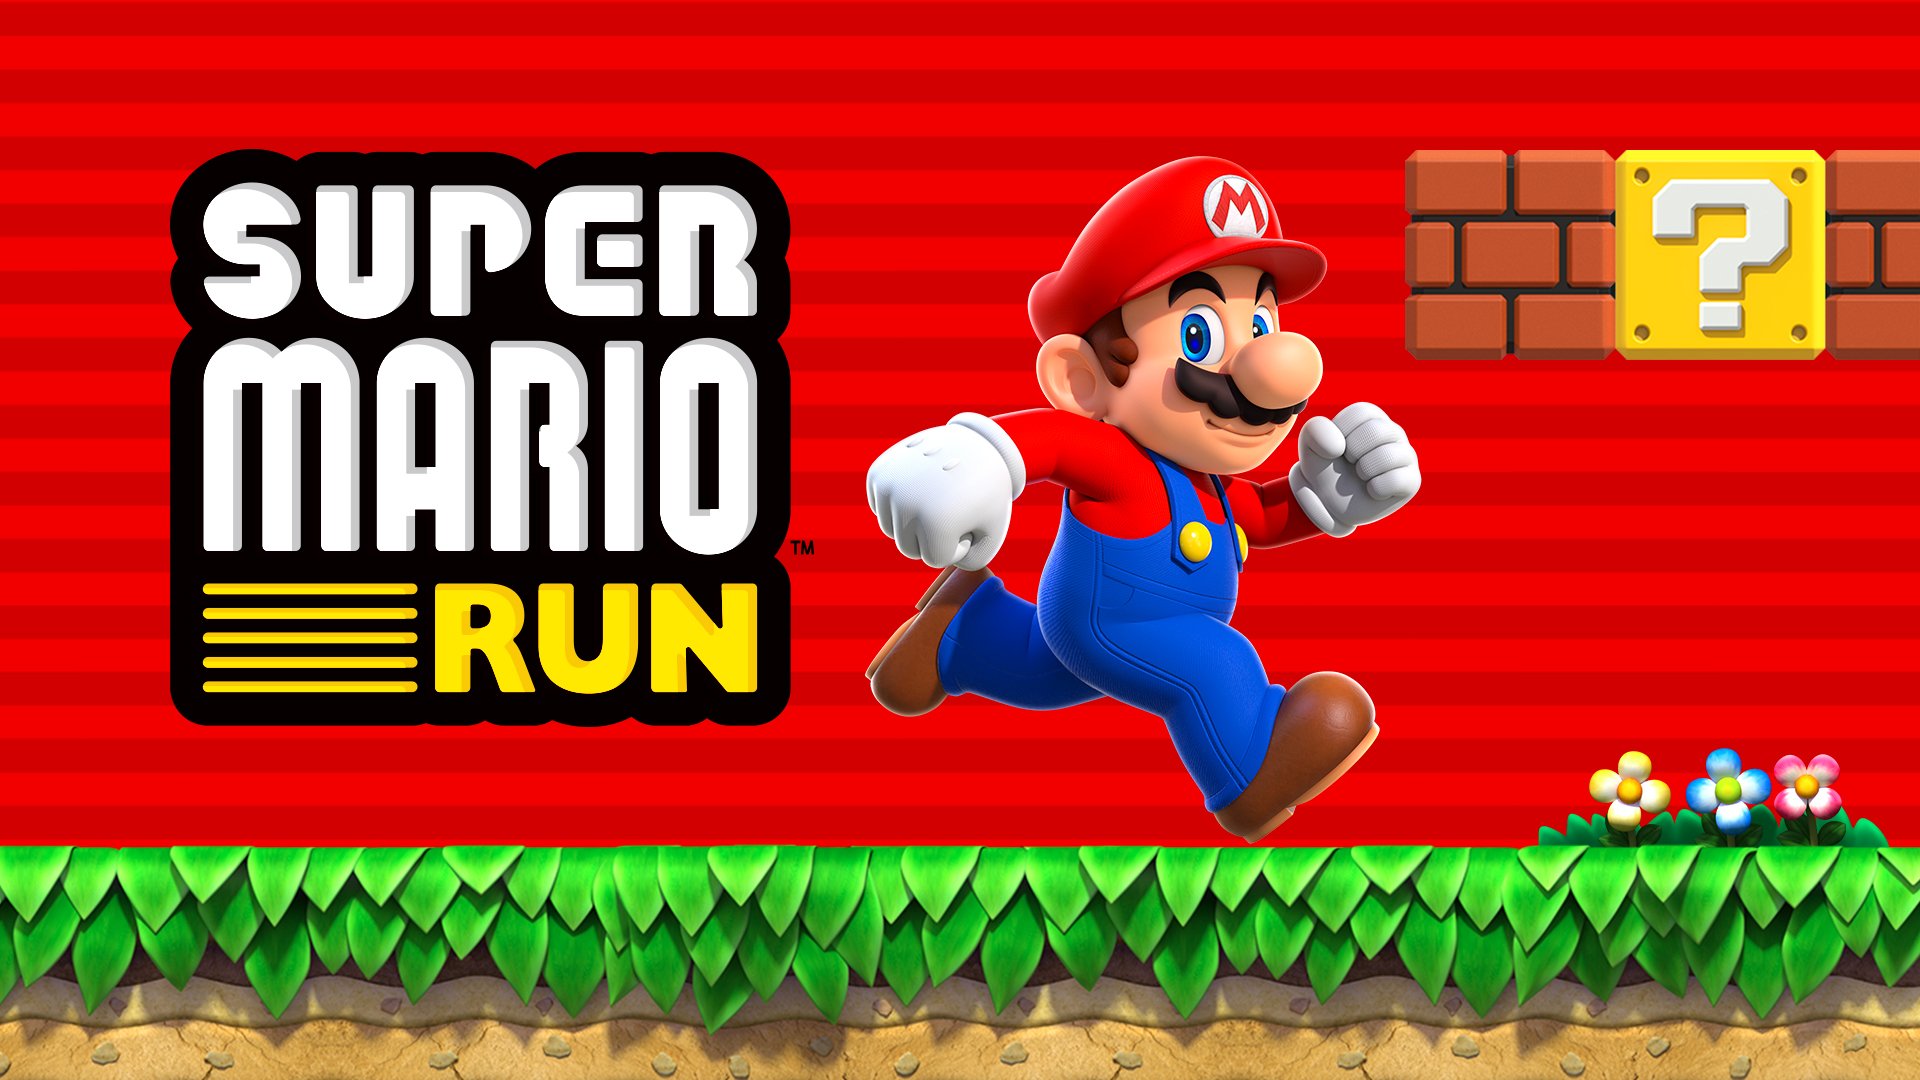 L’aggiornamento 1.1.2 di Super Mario Run disponibile per iOS